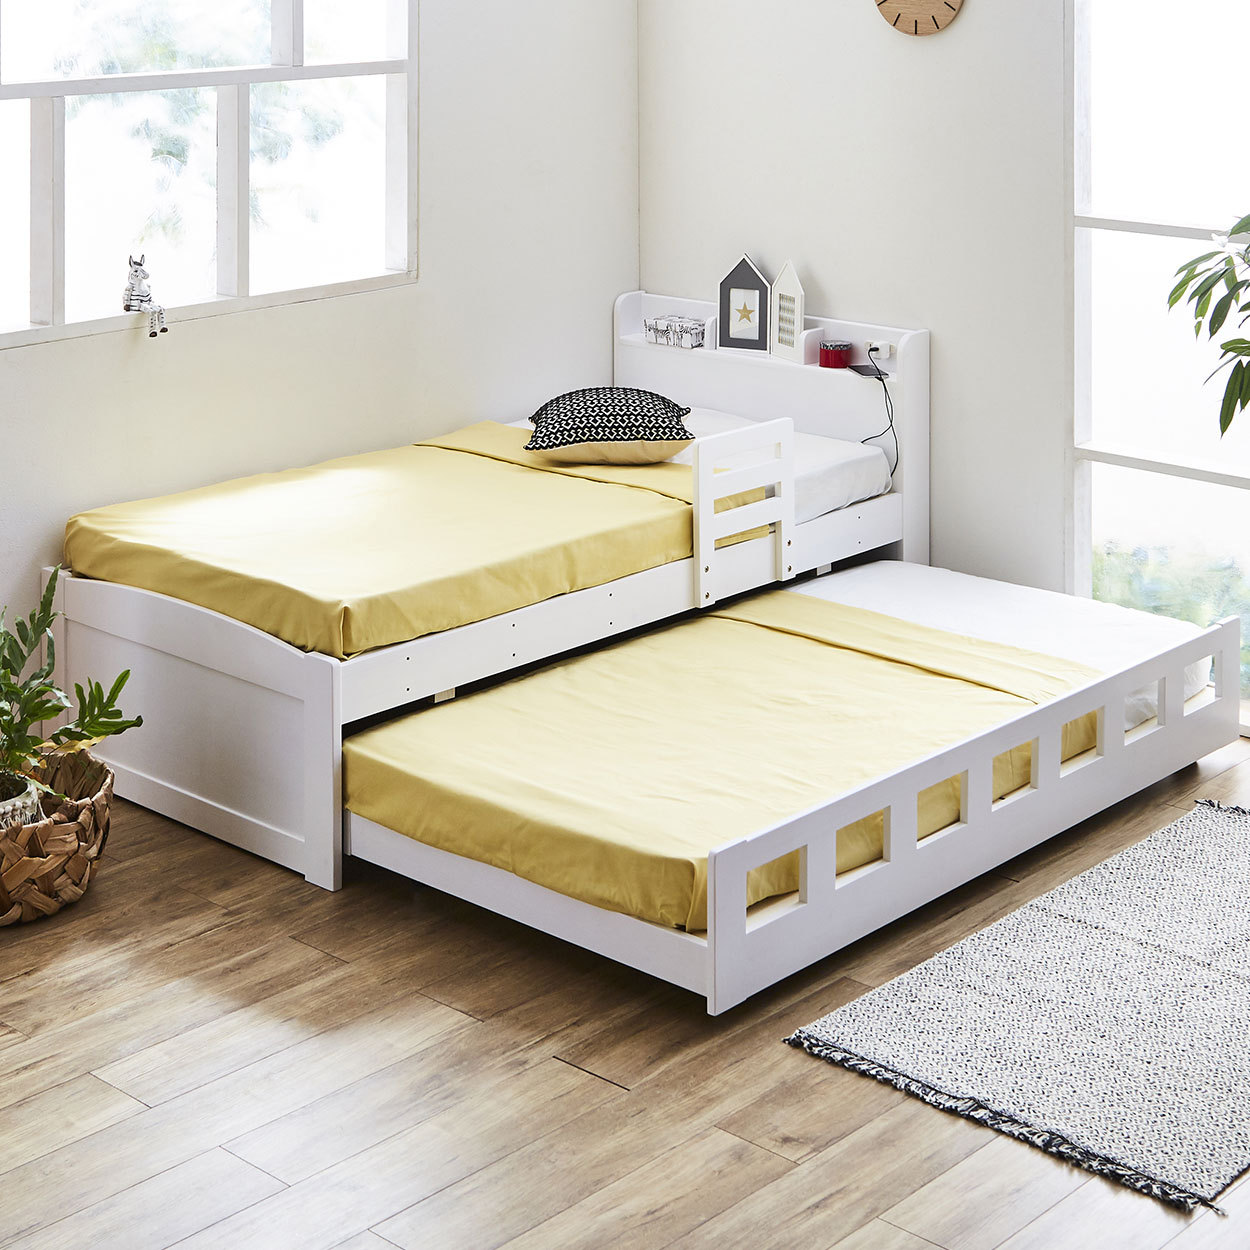 親子ベッド 2段ベッド シングル 木製 すのこ 棚付き 可動式サイドガード コンセント 低ホルムアルデヒド 新商品